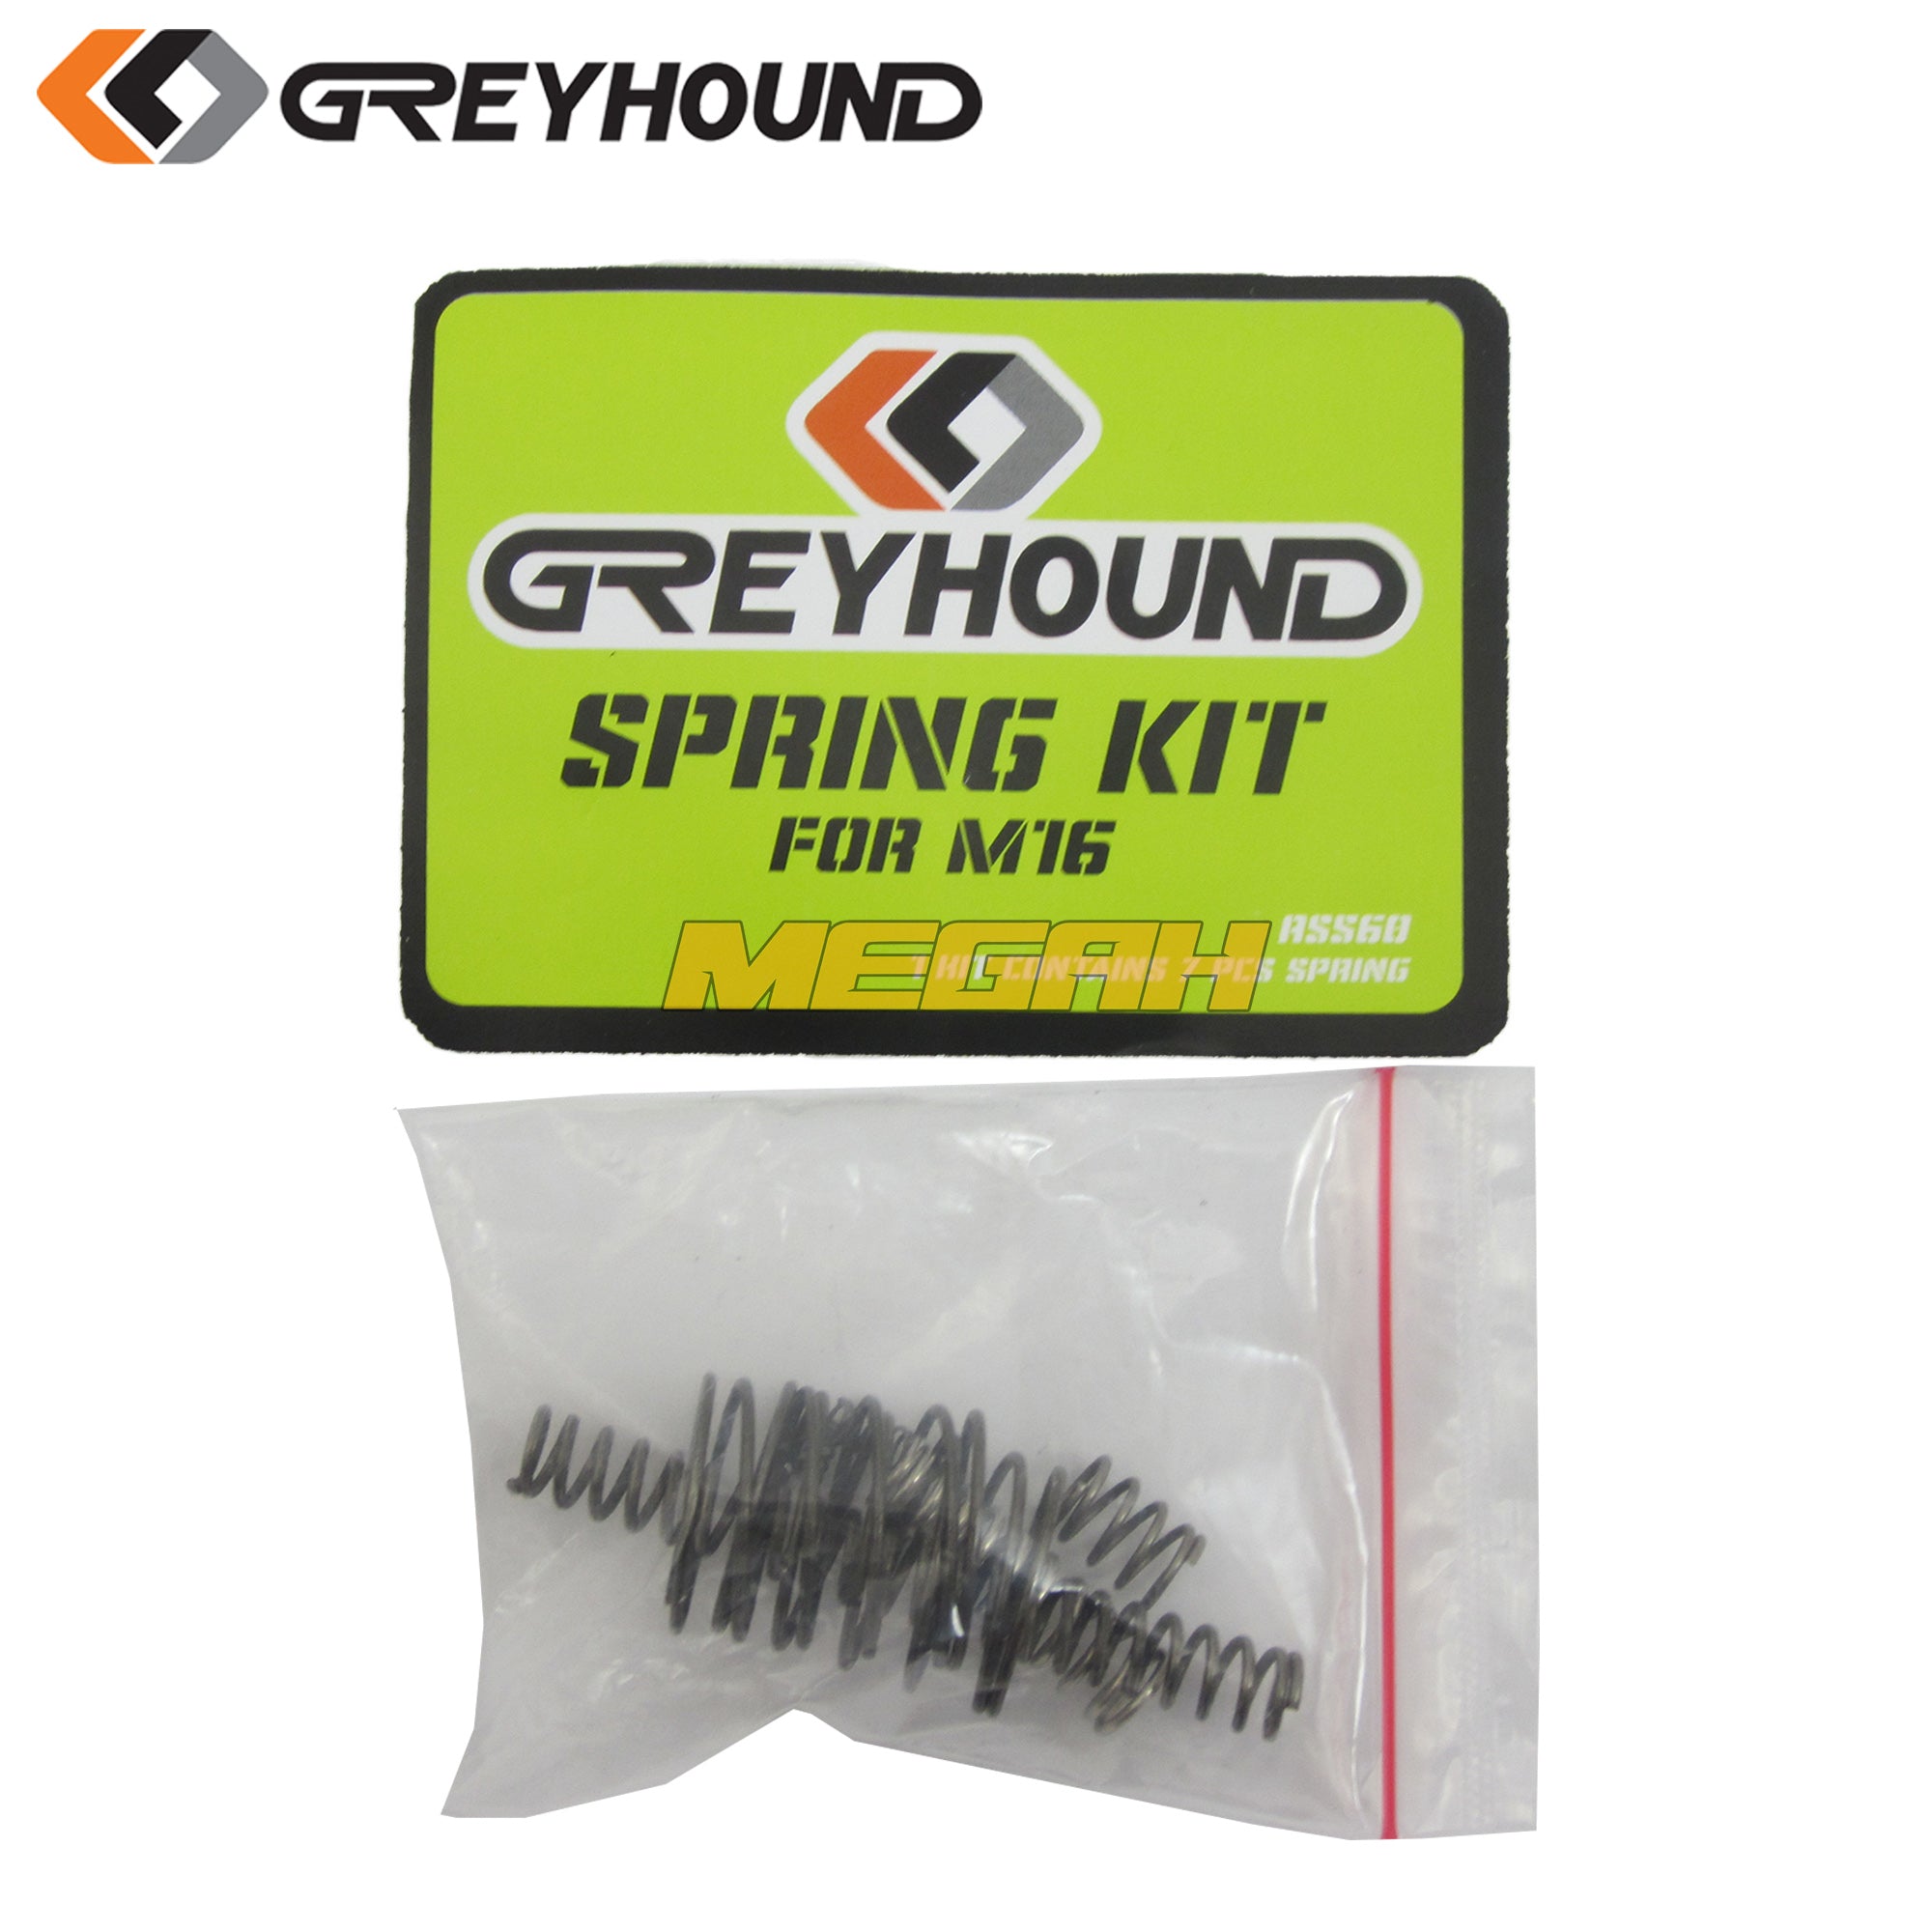 SPAREPART SPRING KIT GREYHOUND M16 (AS560) - Megah Sport